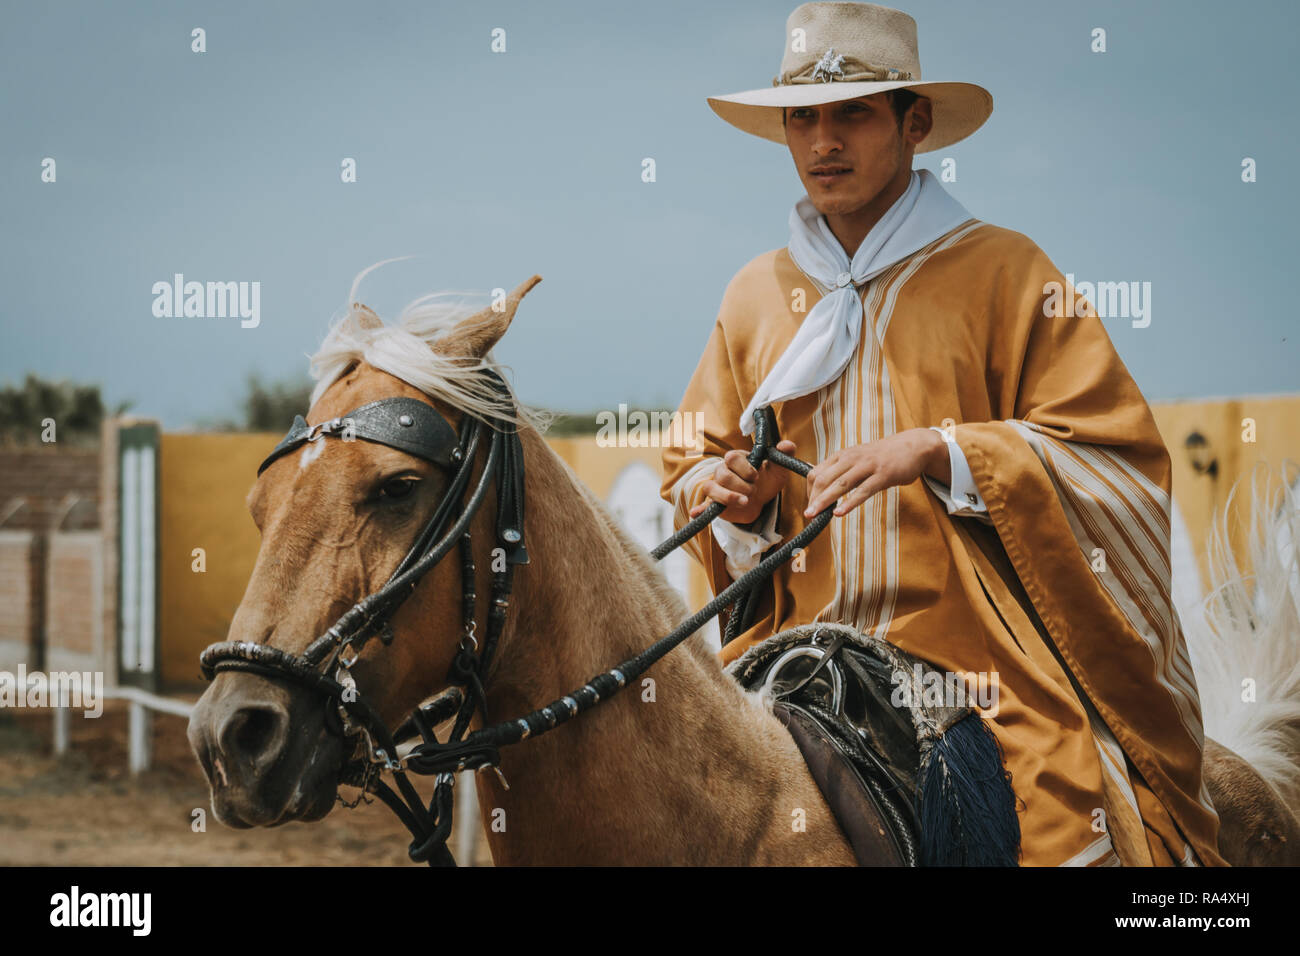 TRUJILLO, PÉROU - Septembre 2018 : Morochuco péruvienne à cheval de cow-boy, en vêtements traditionnels et hat, vue en gros plan Banque D'Images